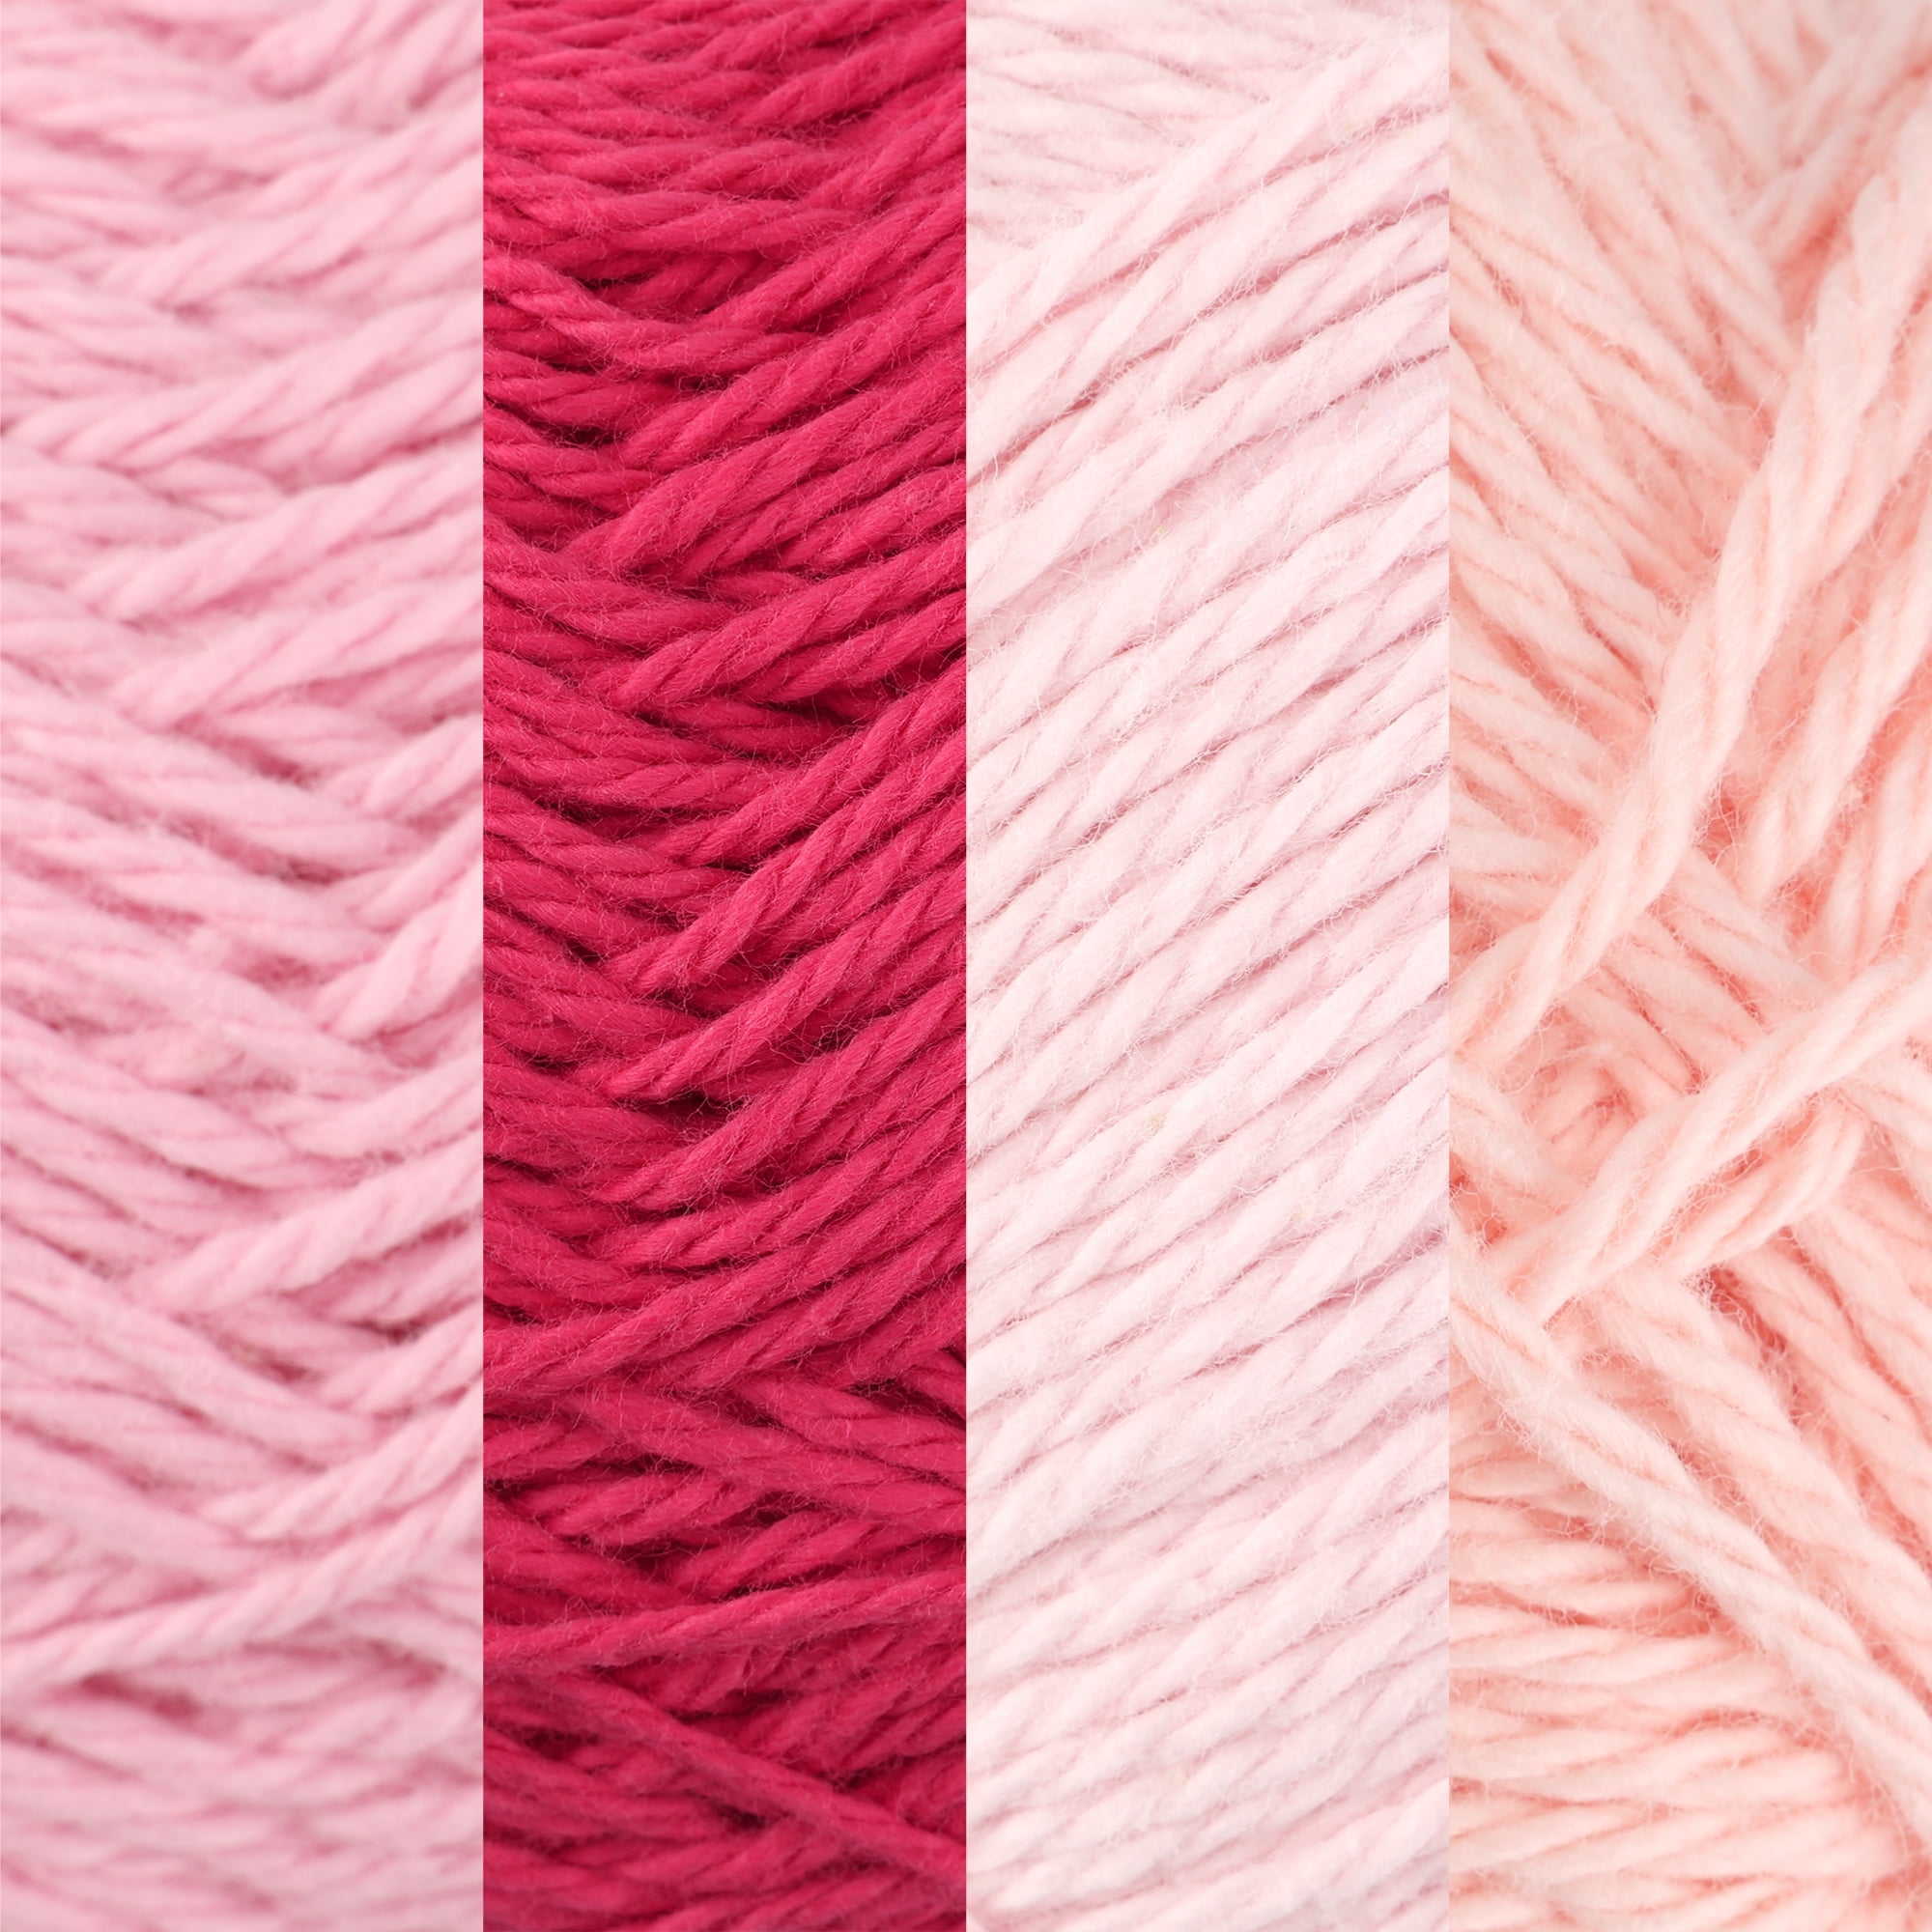 2 Skeins Royal Yarn by Zeeman, Pink, #4 Wt., 264 Yds. each (528 Yds. Total)